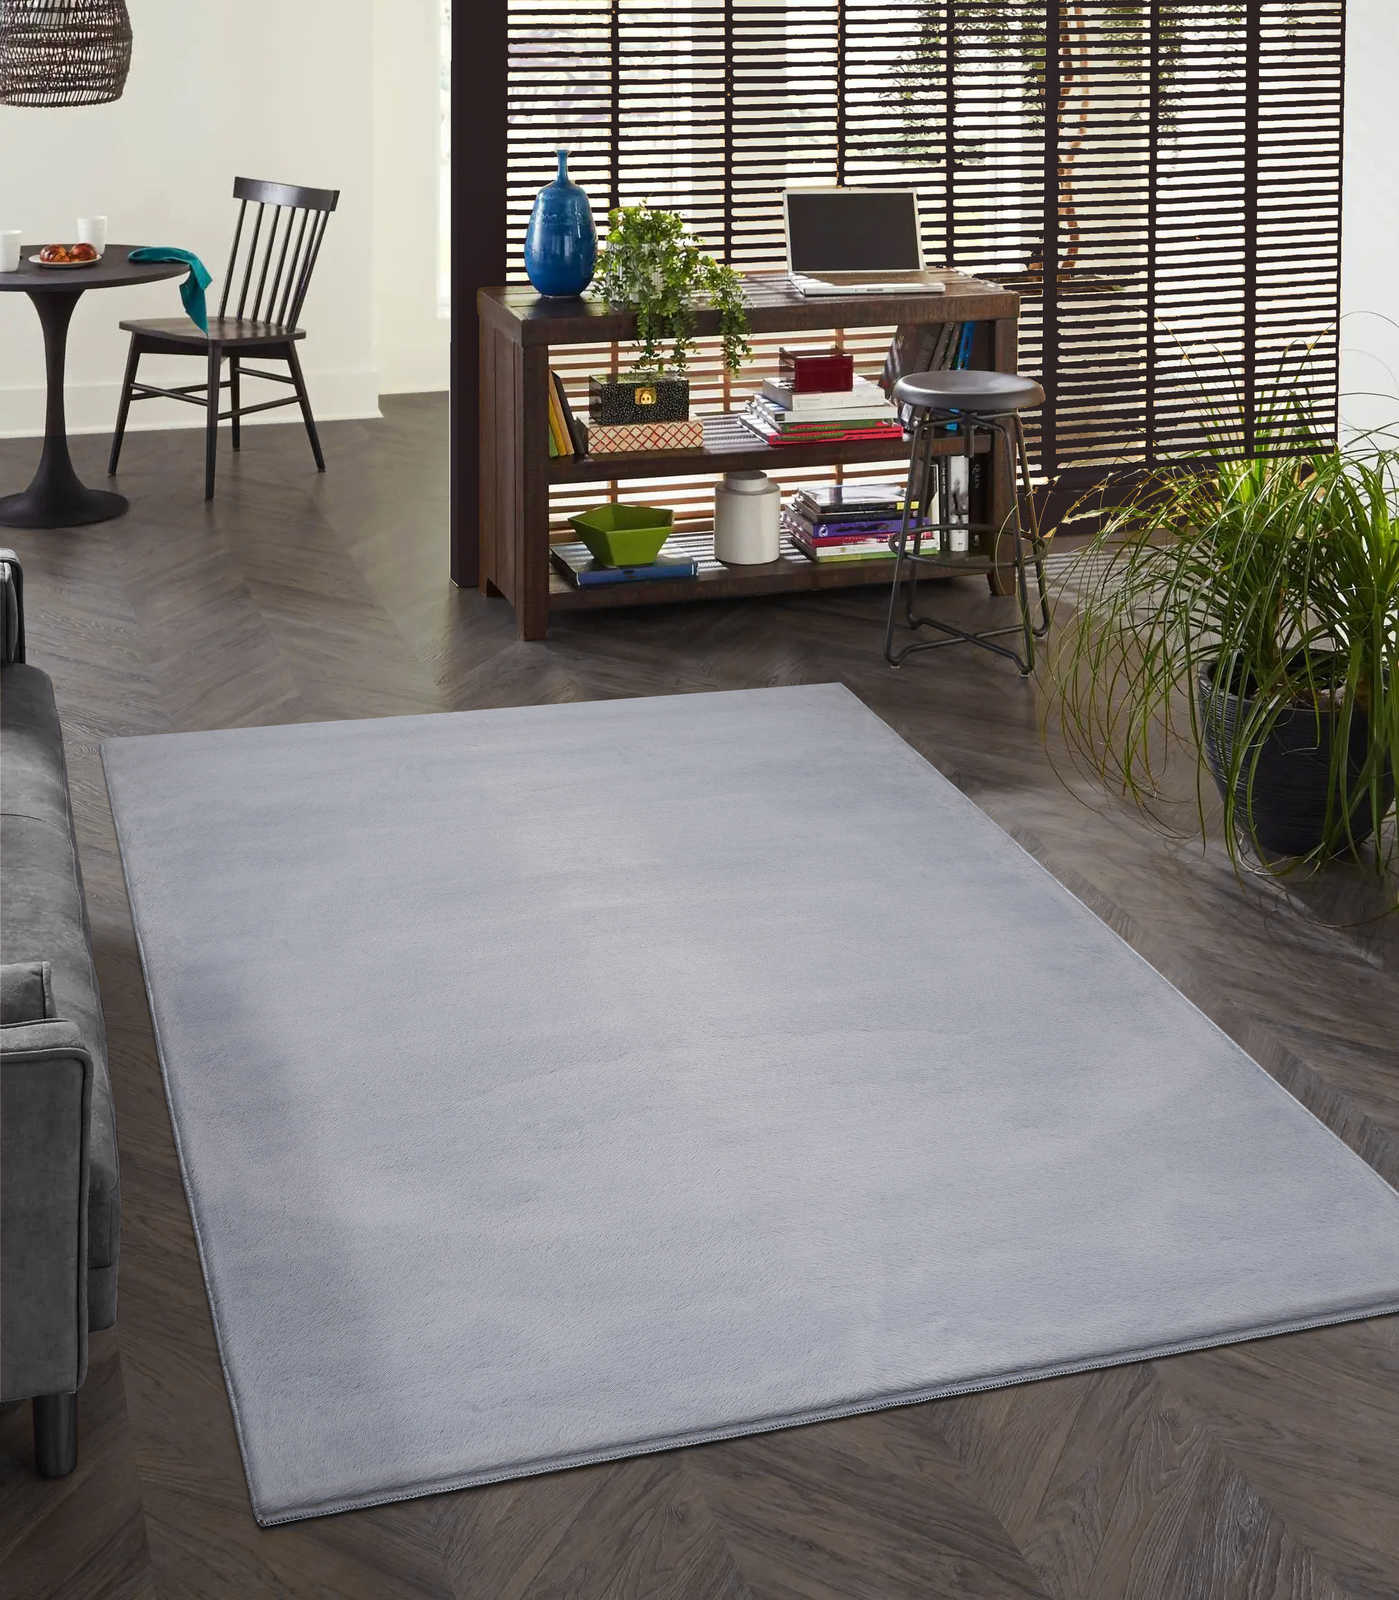         Angenehmer Hochflor Teppich in sanften Grau – 100 x 50 cm
    